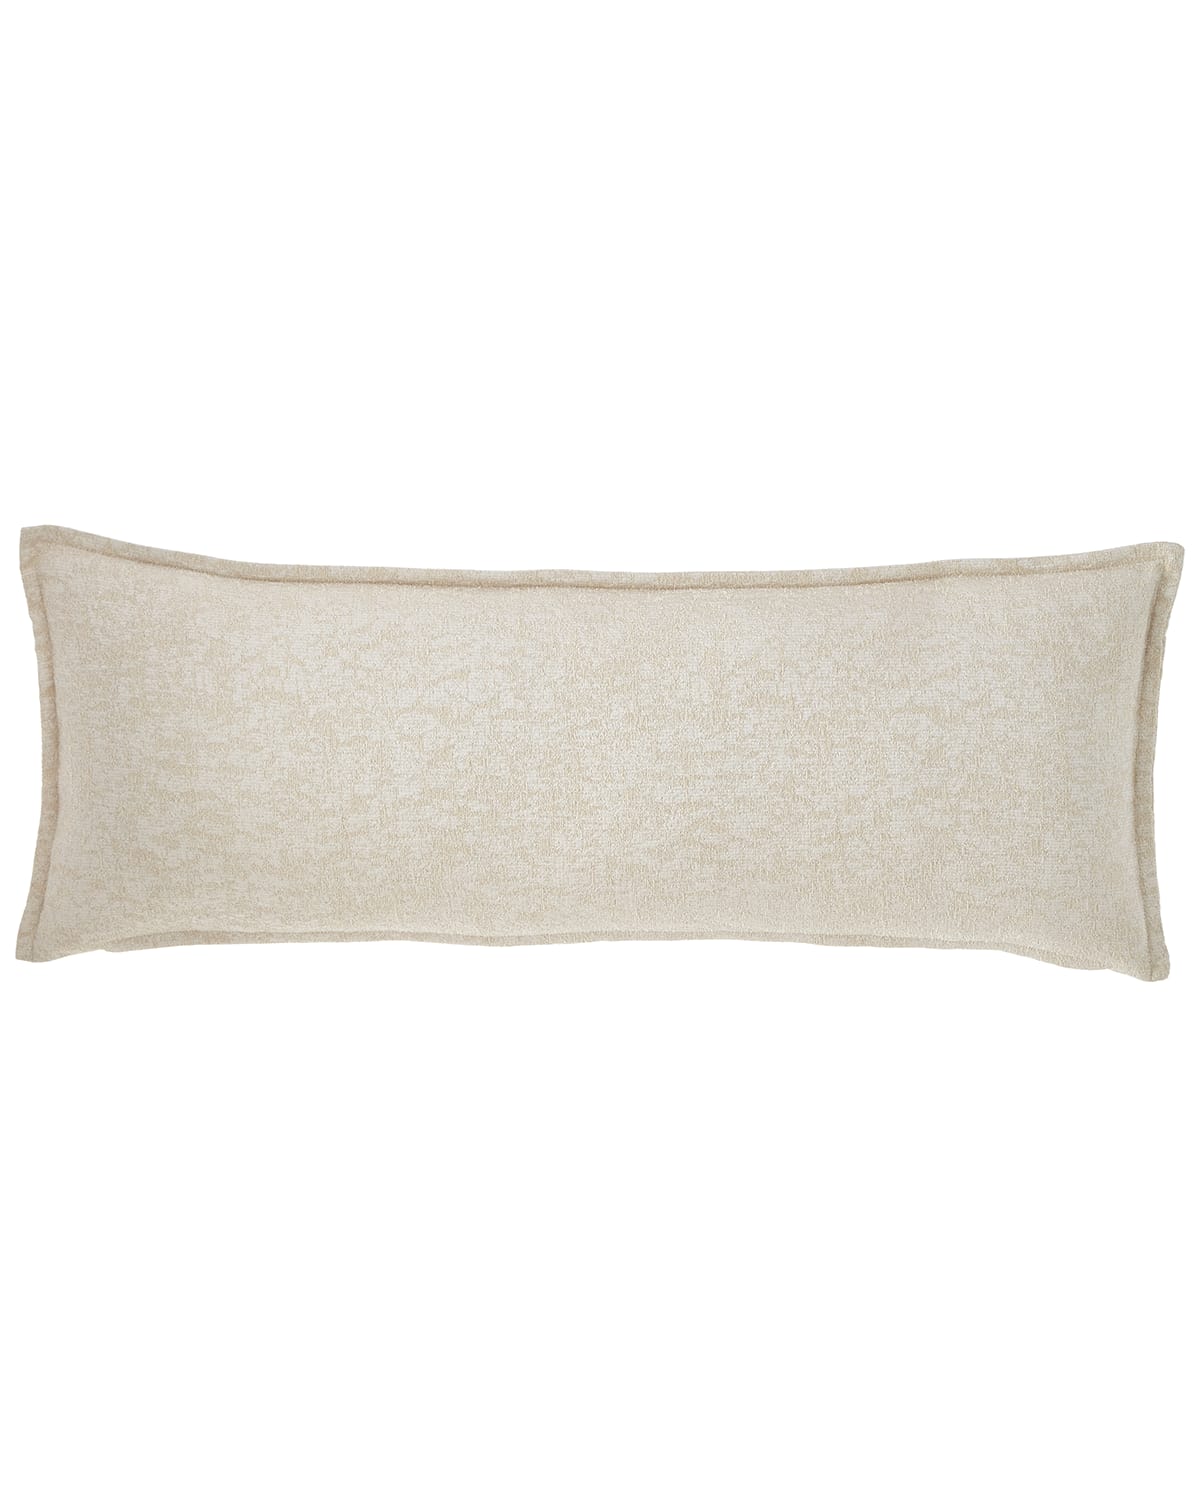 Moonstruck Decorative Oblong Pillow